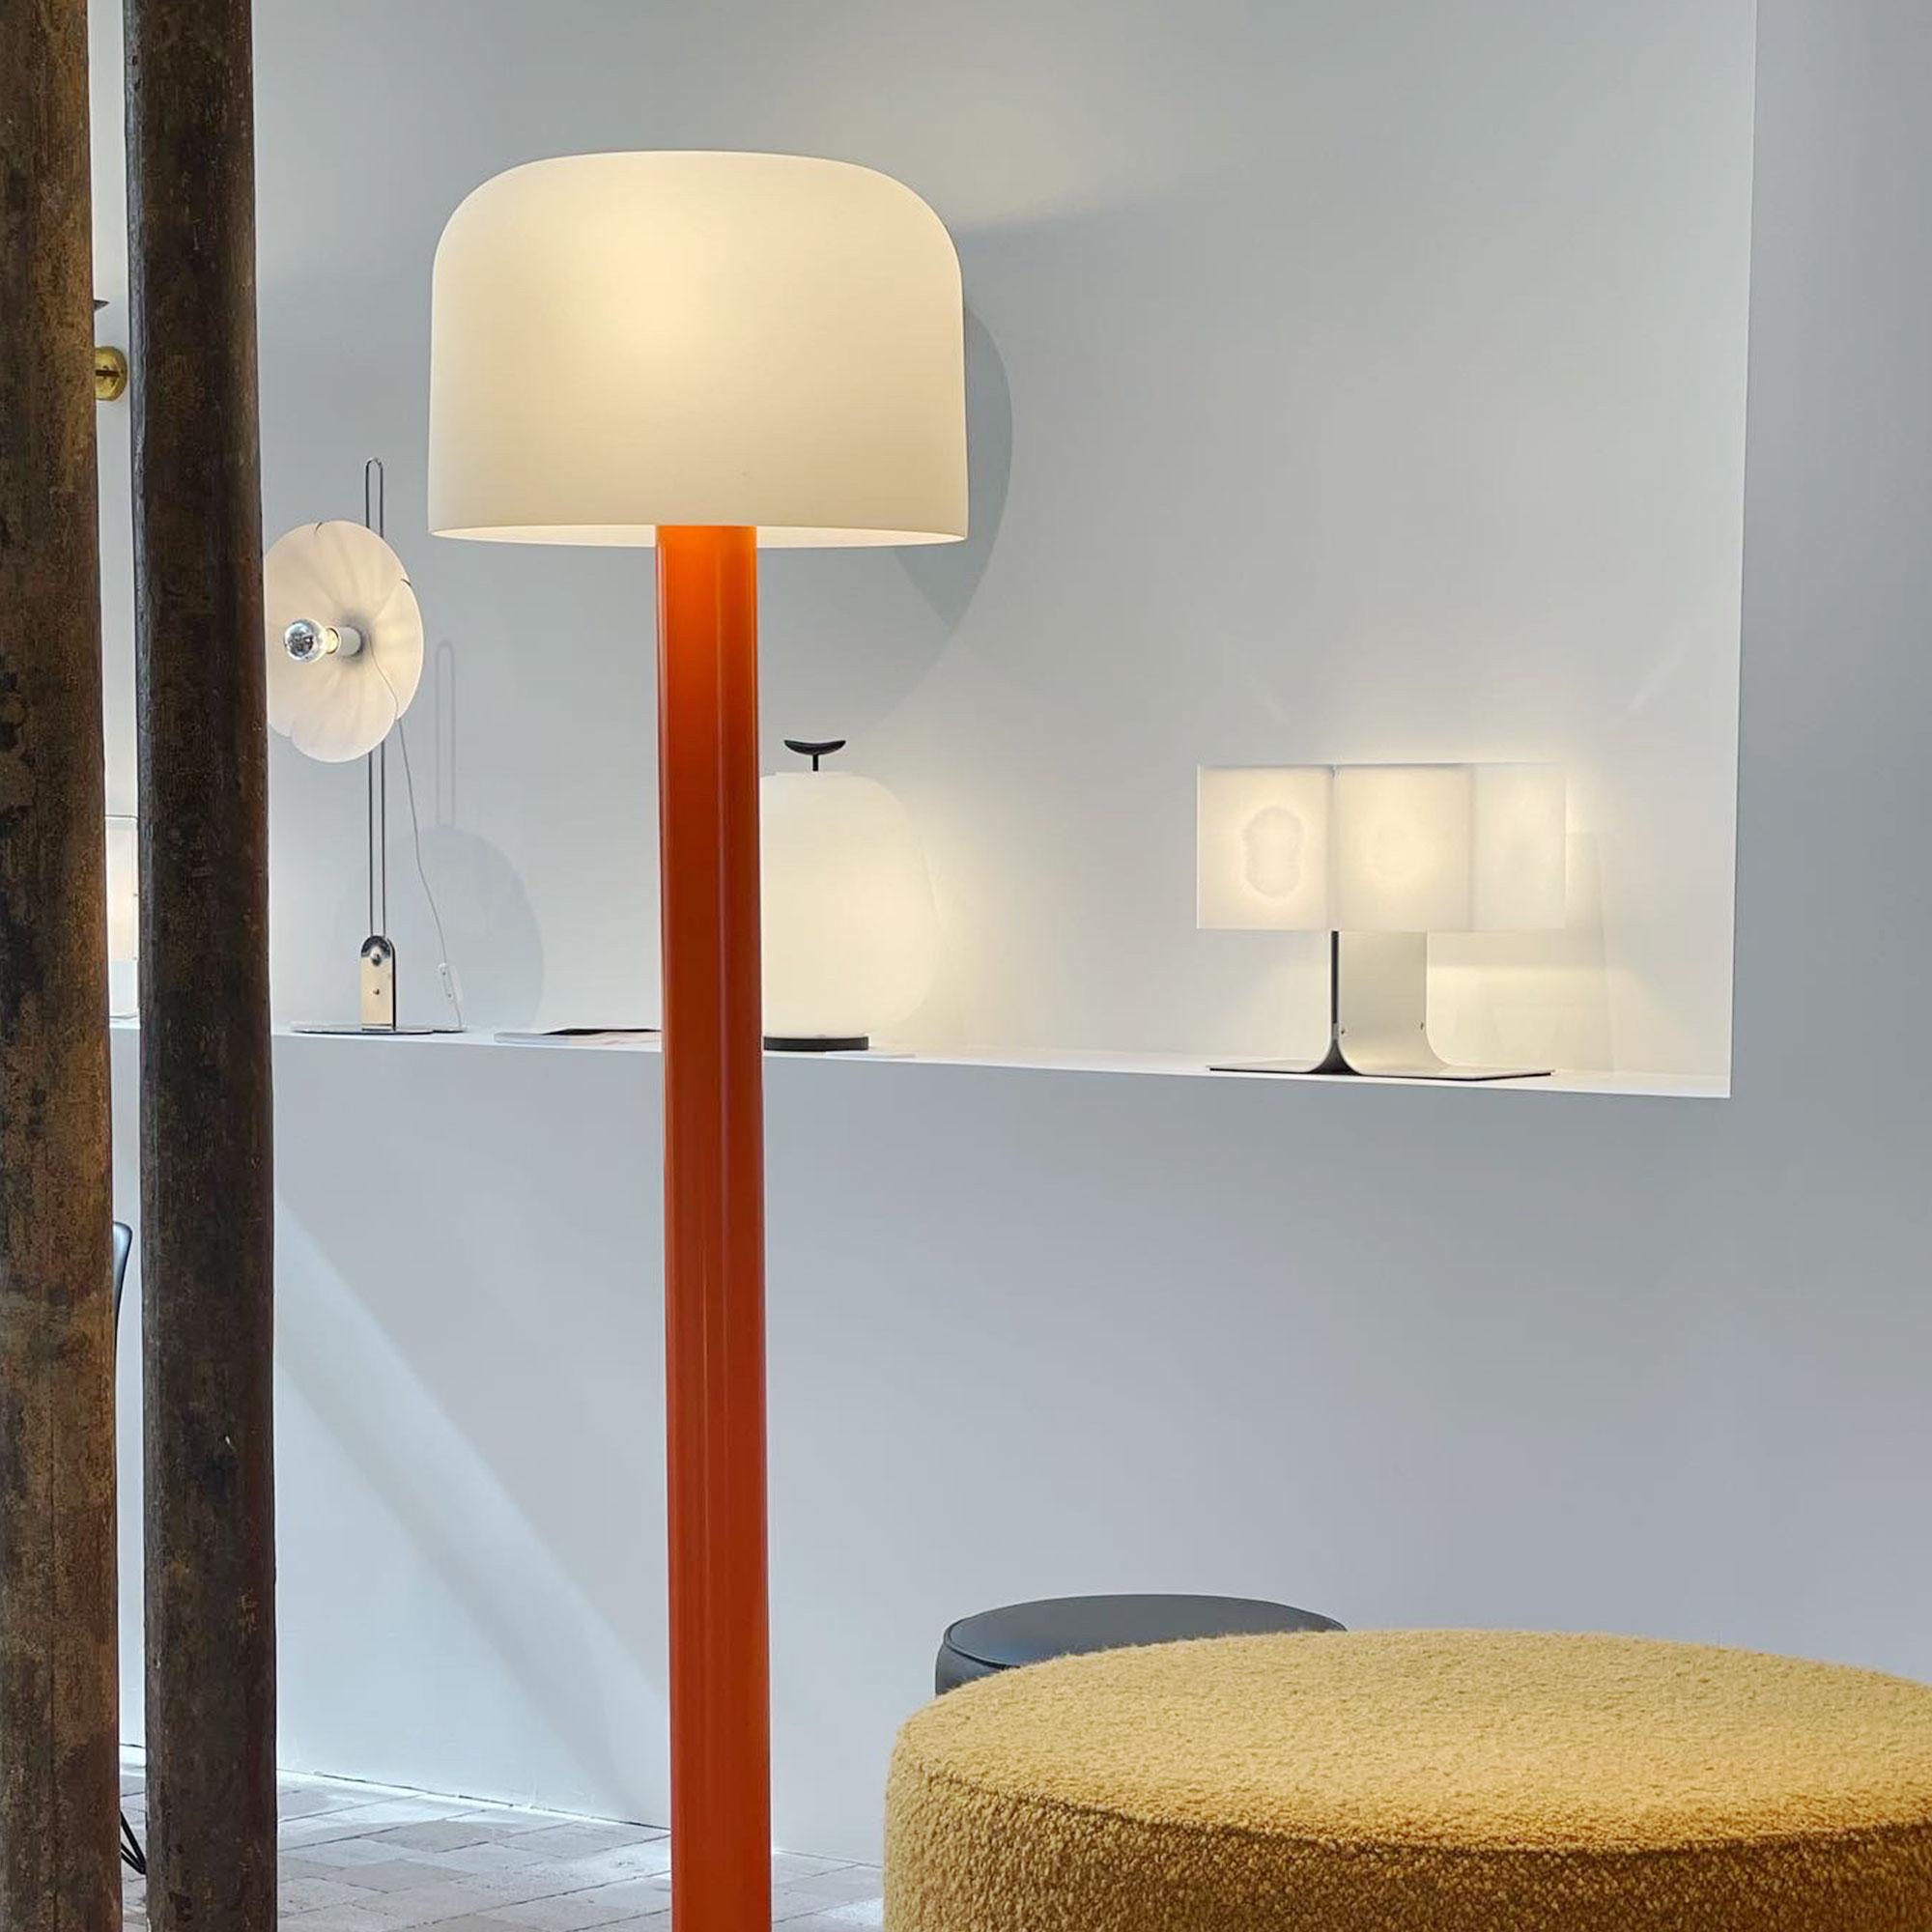 Michel Mortier 10527 lampadaire en métal et verre pour Disderot en orange.

Conçu à l'origine en 1972, ce lampadaire sculptural est une nouvelle édition numérotée produite avec un certificat d'authentification. Fabriqué en France par Disderot avec